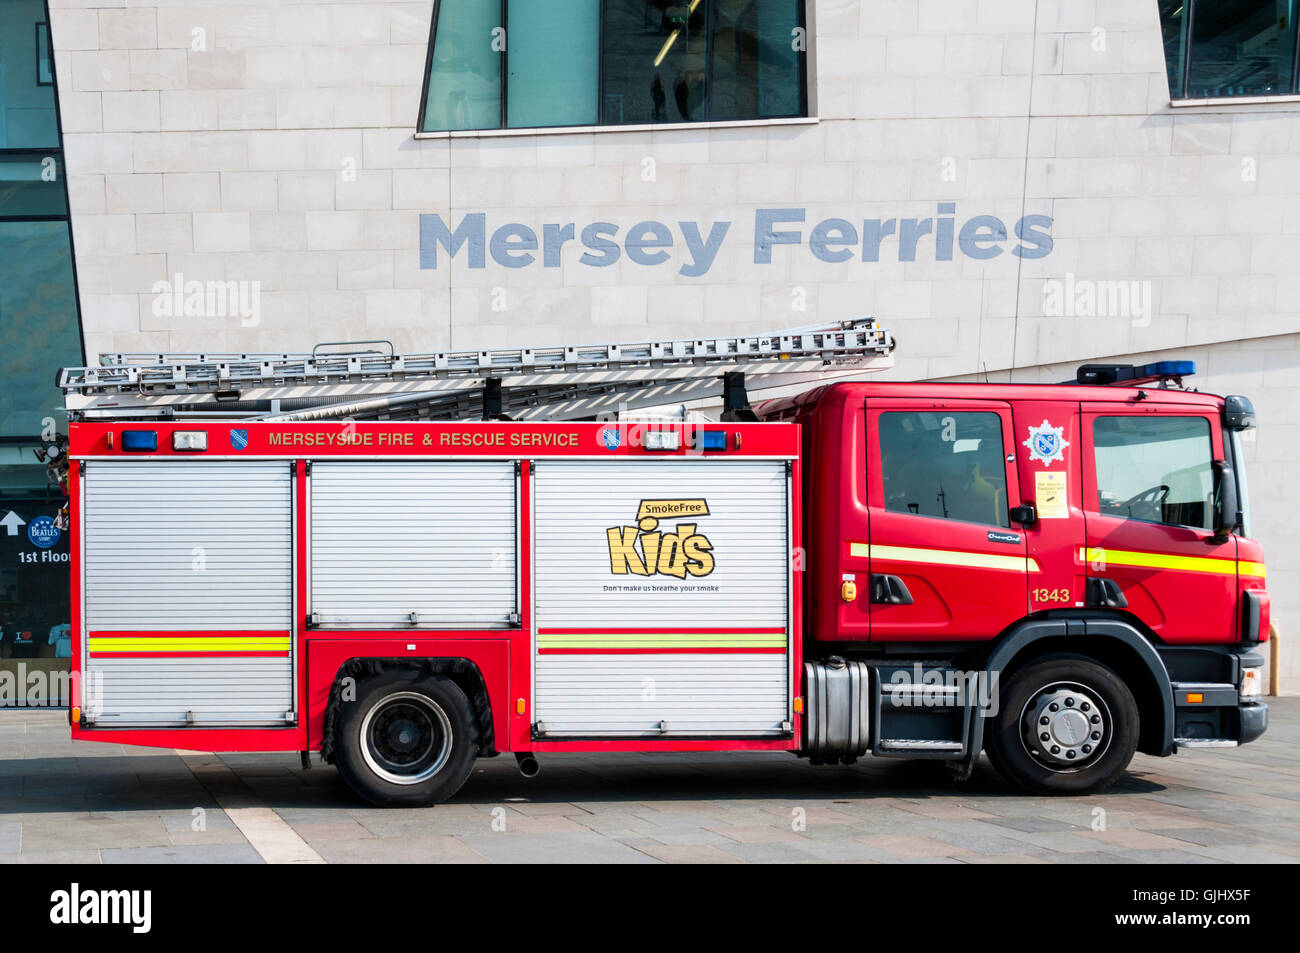 Un service d'incendie et de sauvetage de Merseyside véhicule à l'extérieur de la Mersey Ferries immeuble sur Liverpool Pier Head. Banque D'Images